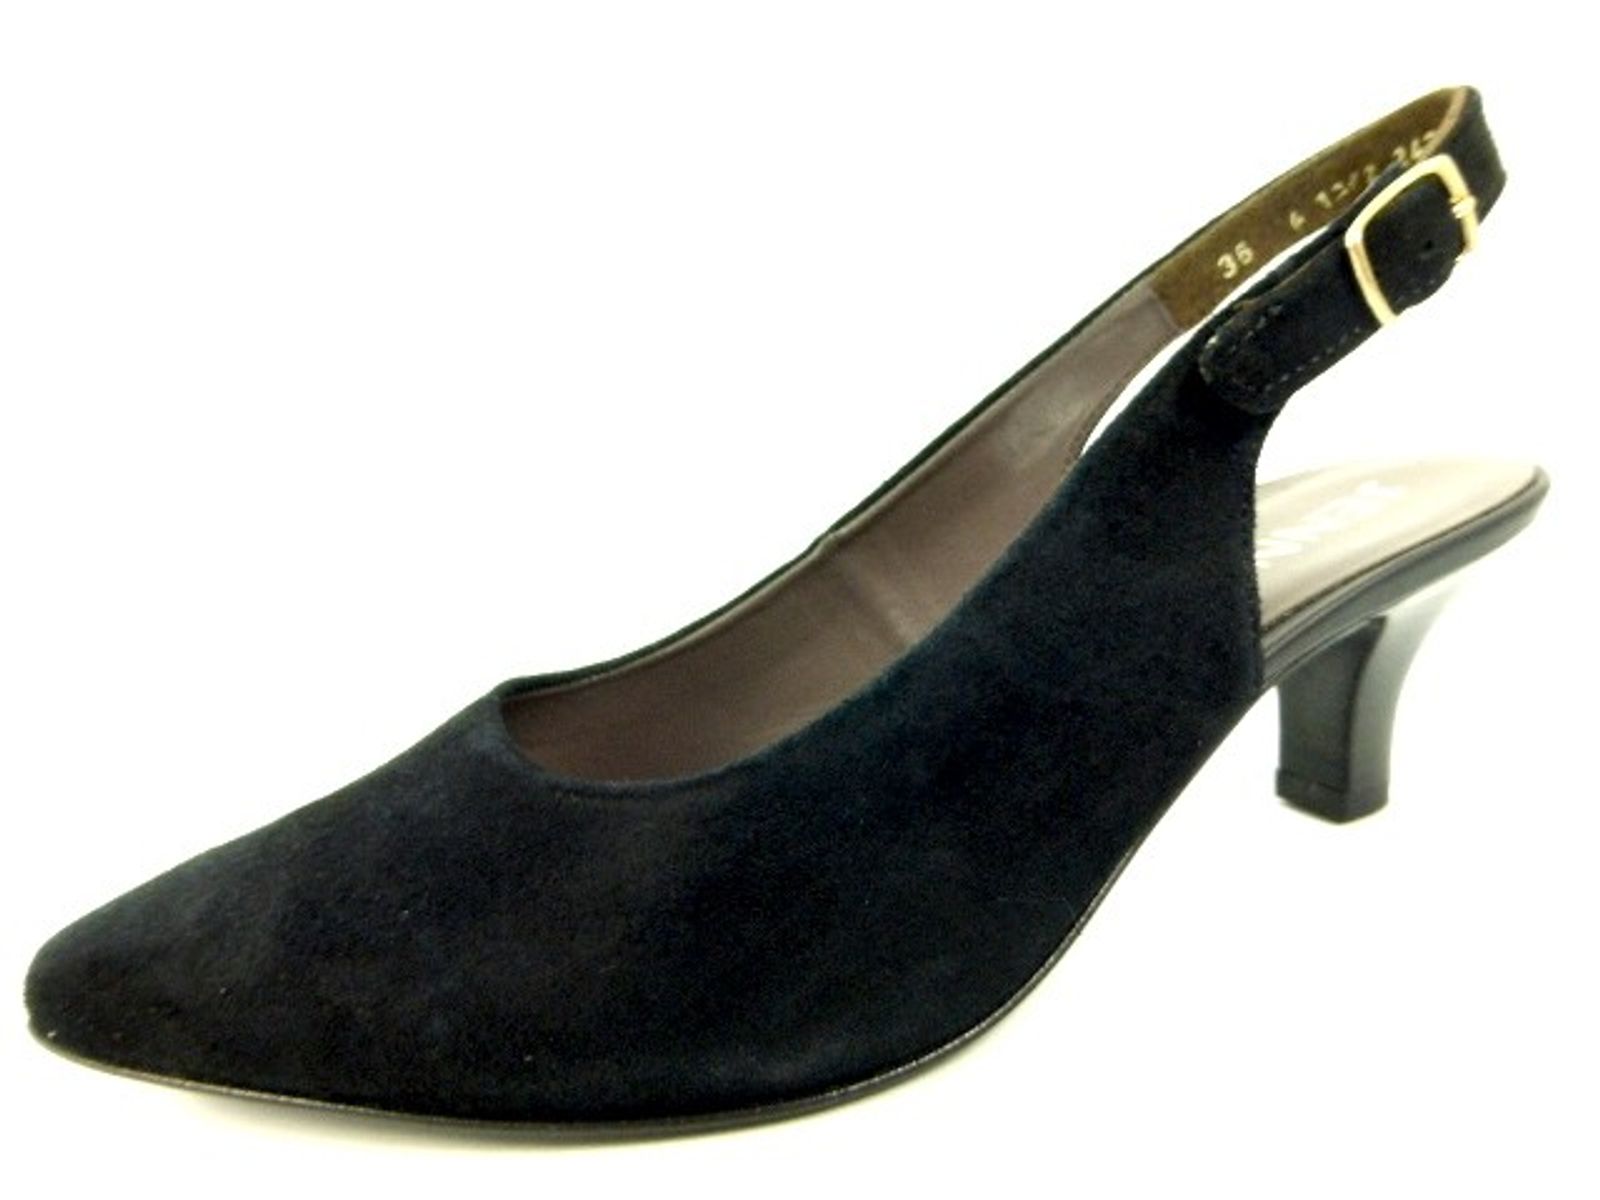 Schuh von Jenny/Granit, 36